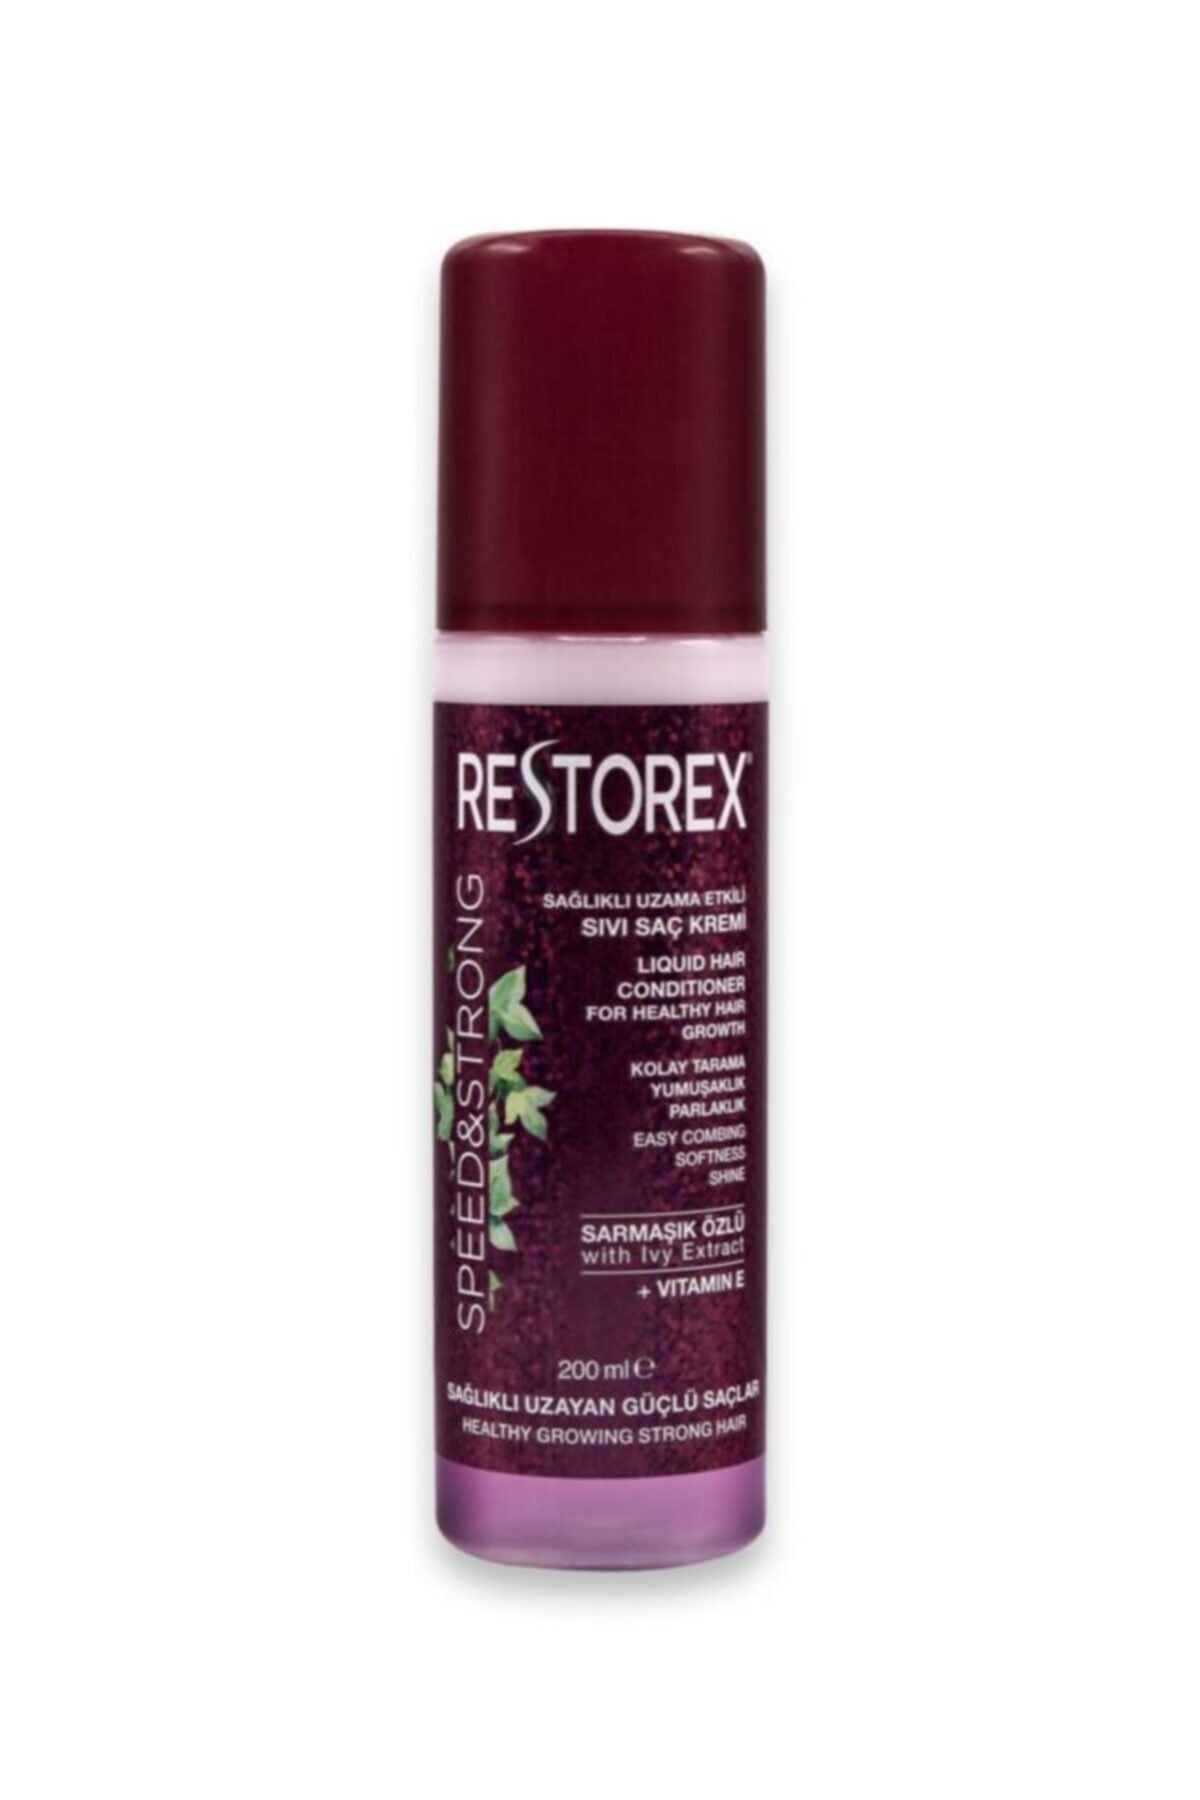 Restorex Sıvı Saç Kremi - Sarmaşık Özlü- Sağlıklı Uzayan Güçlü Saçlar